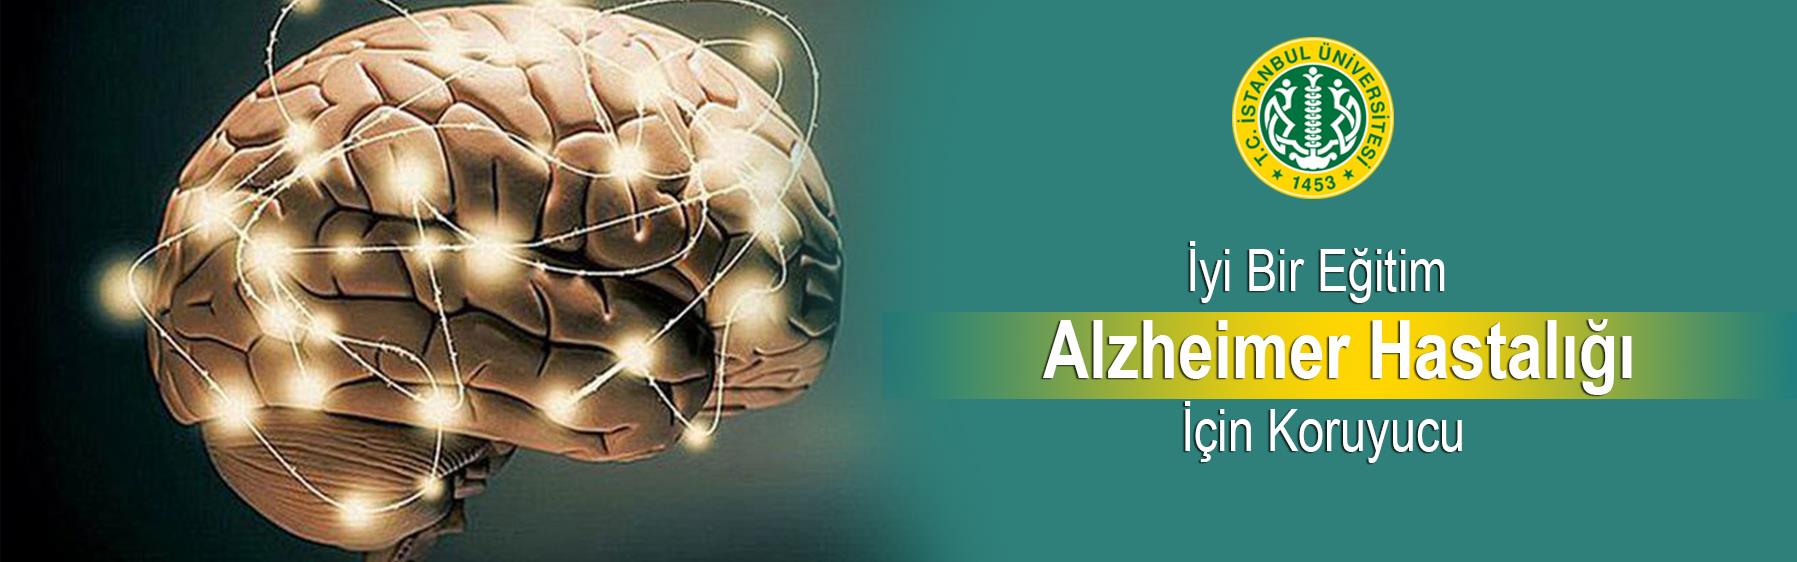 İyi-Bir-Eğitim-Alzheimer-Hastalığı-İçin-Koruyucu